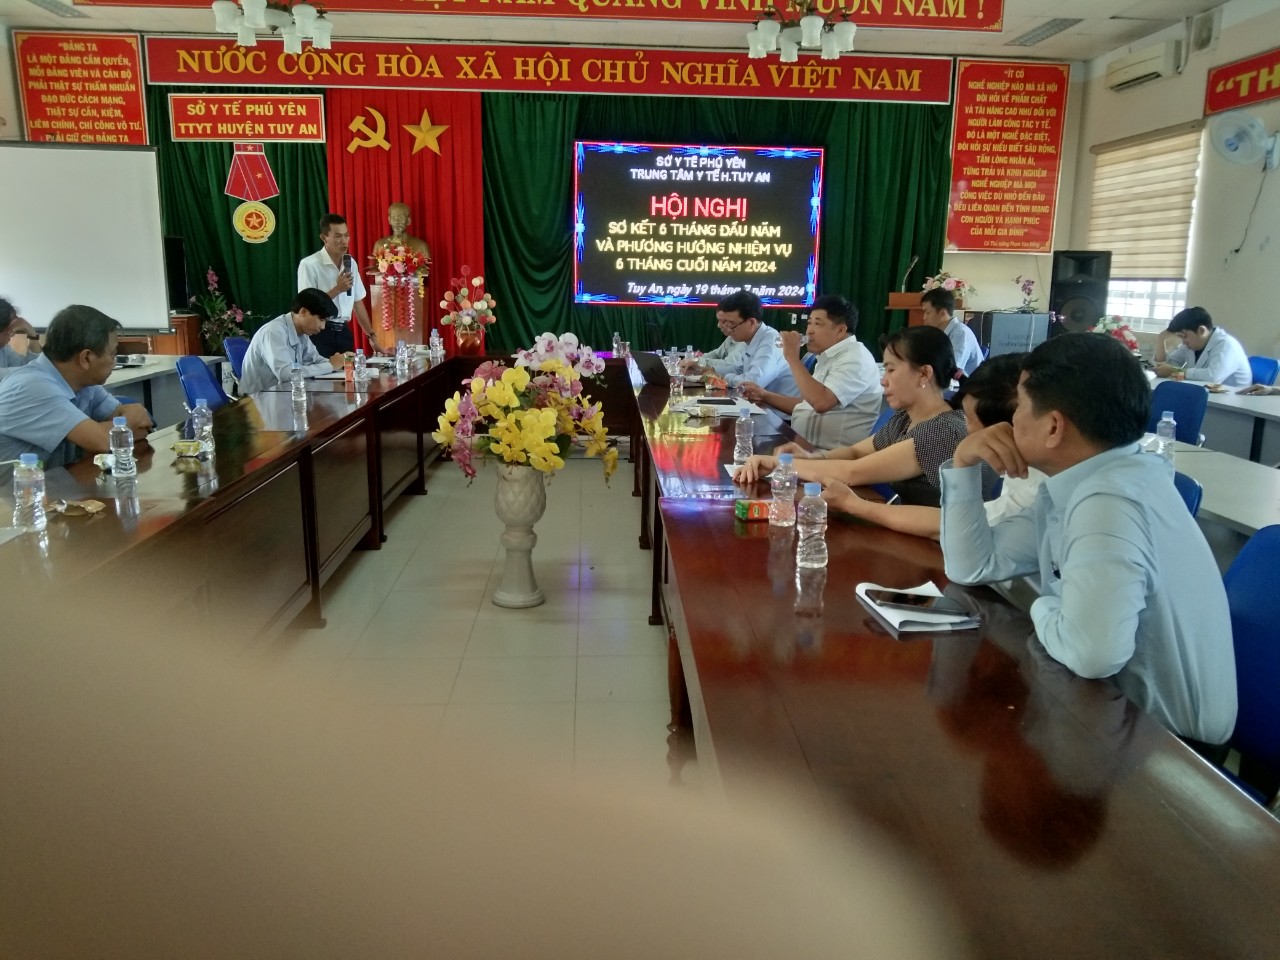 Trung tâm Y tế huyện Tuy An tổ chức Hội Nghị Sơ kết 6 tháng đầu năm và Phương hướng nhiệm vụ 6 tháng